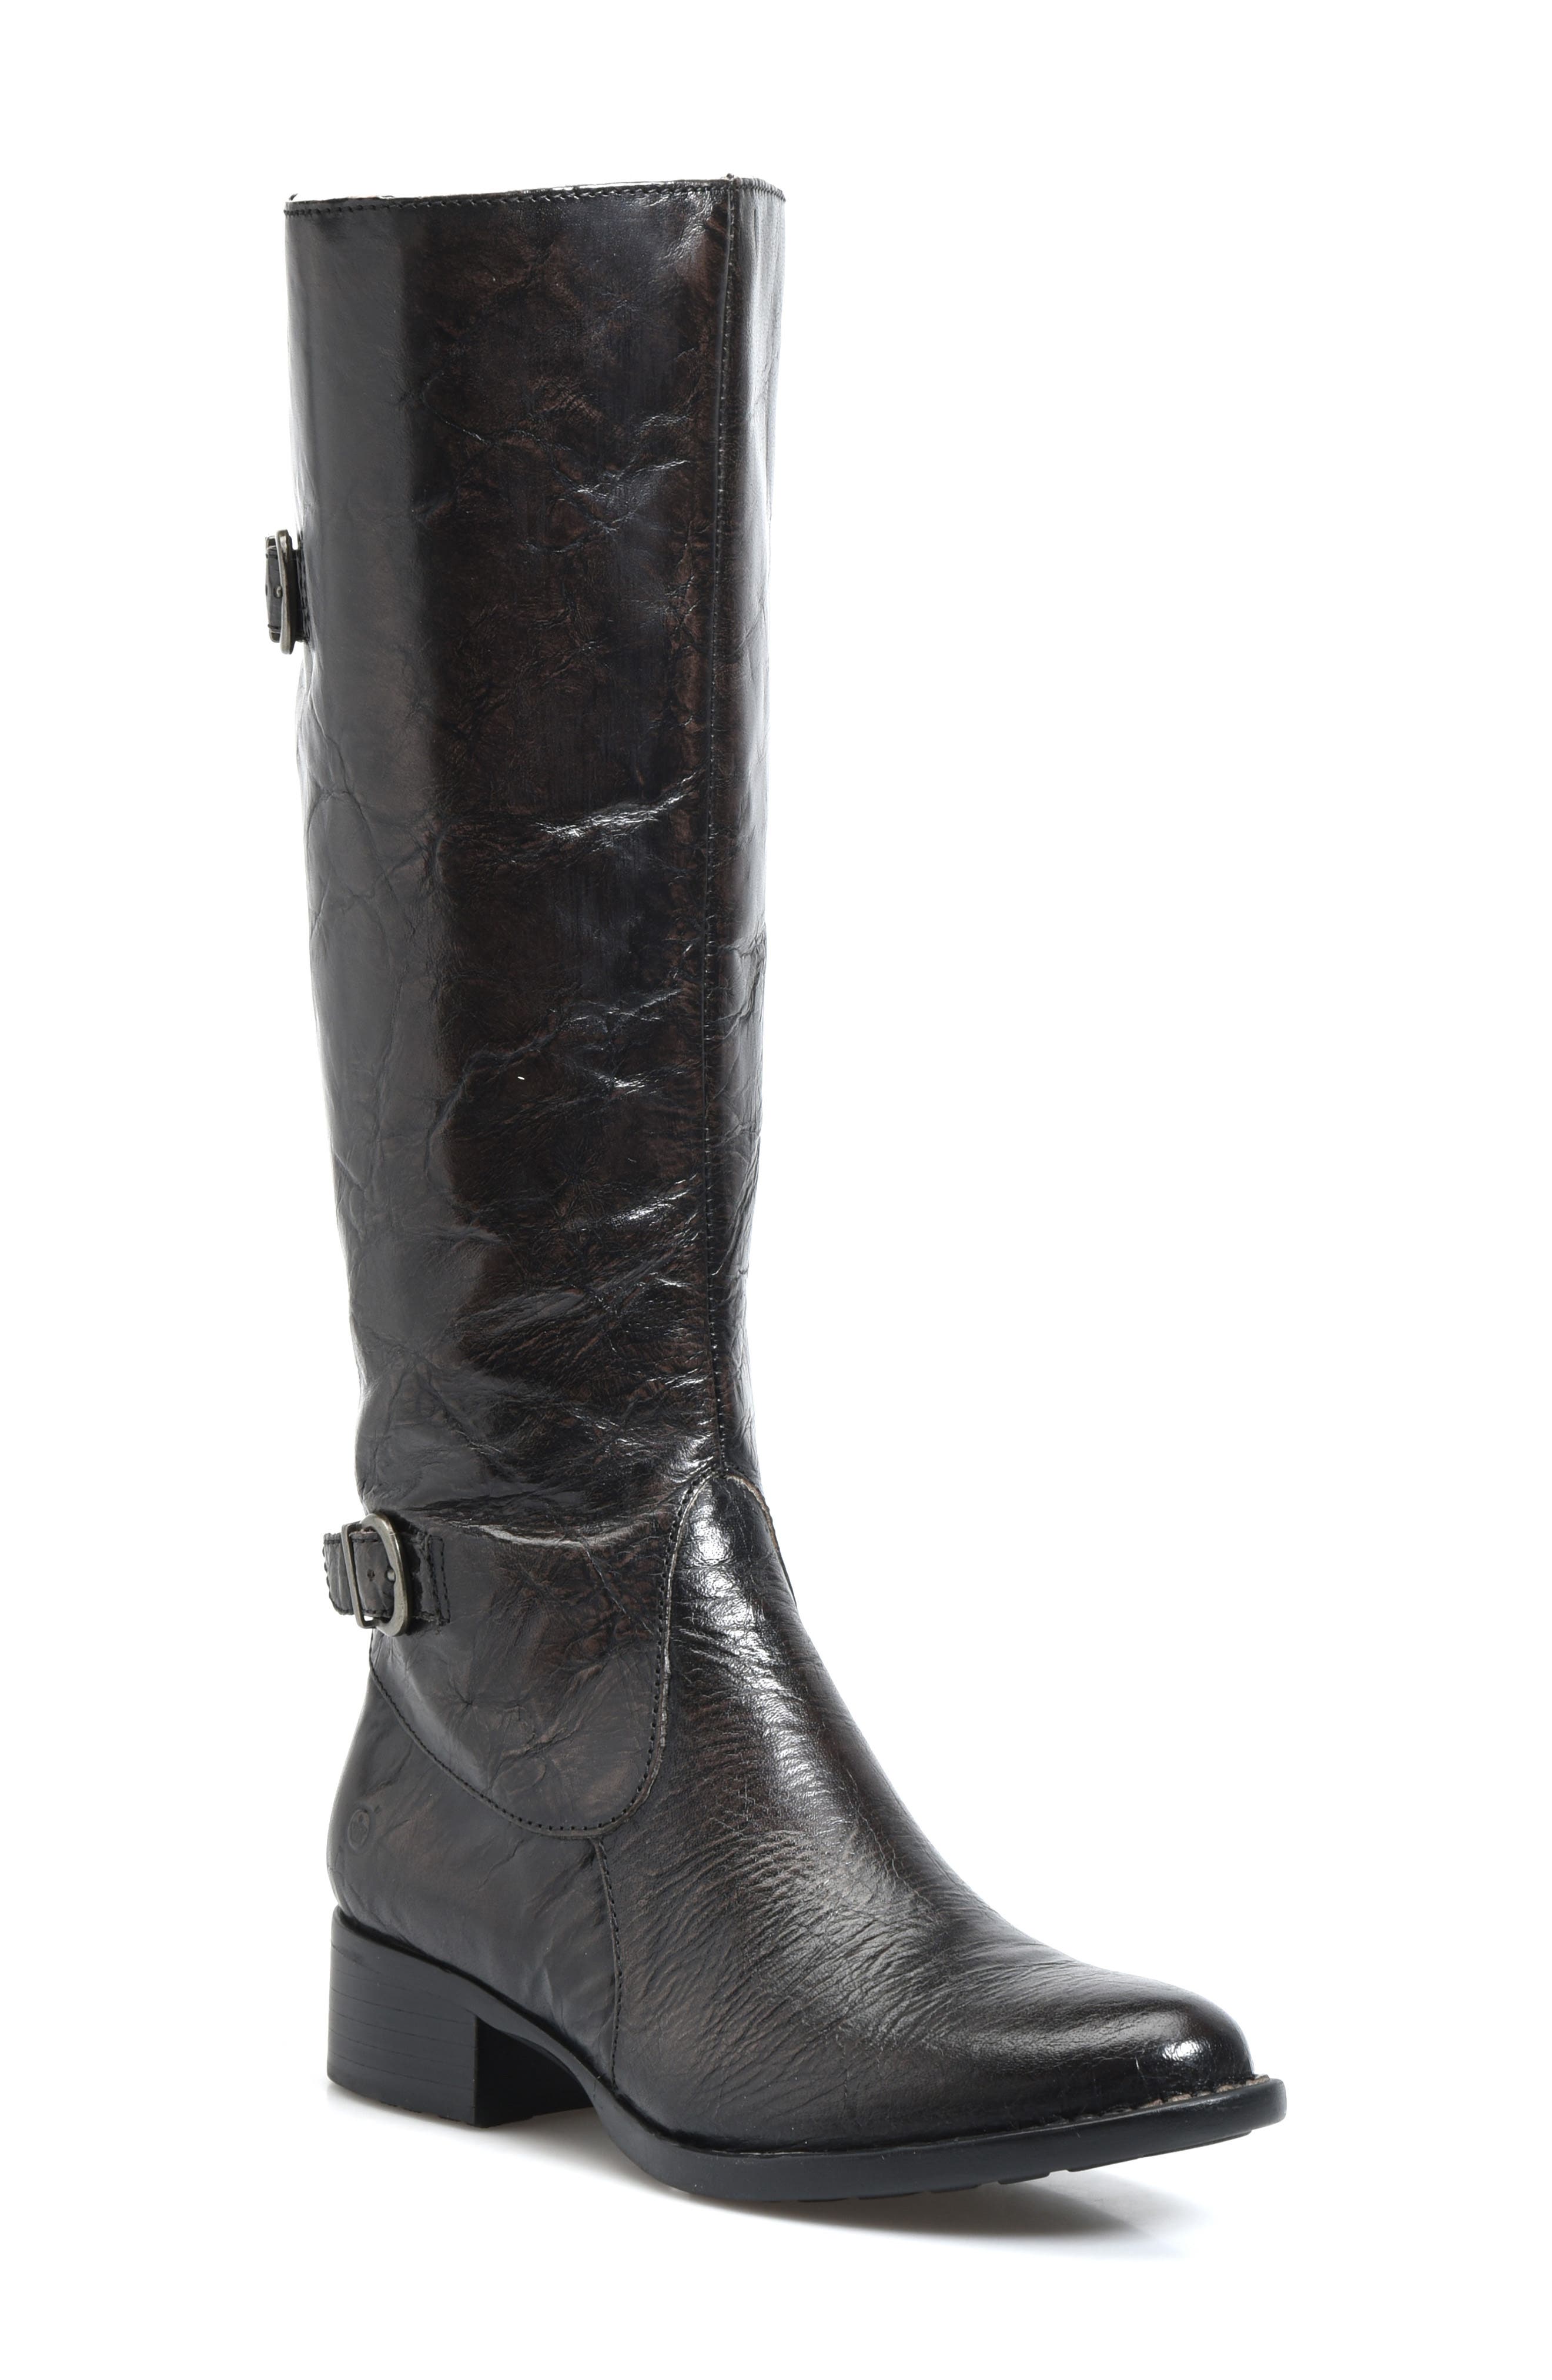 equestrian boots wide calf